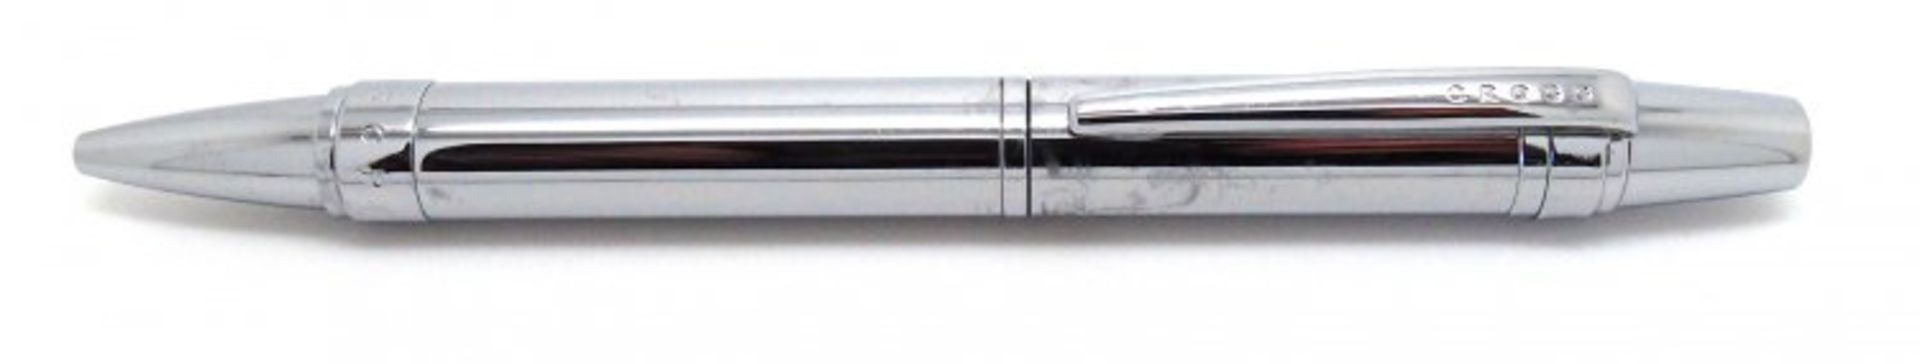 + VAT Brand New Cross Nile Pure Chrome Ballpoint Pen ISP £27.90 (Ebay) - Image 2 of 4